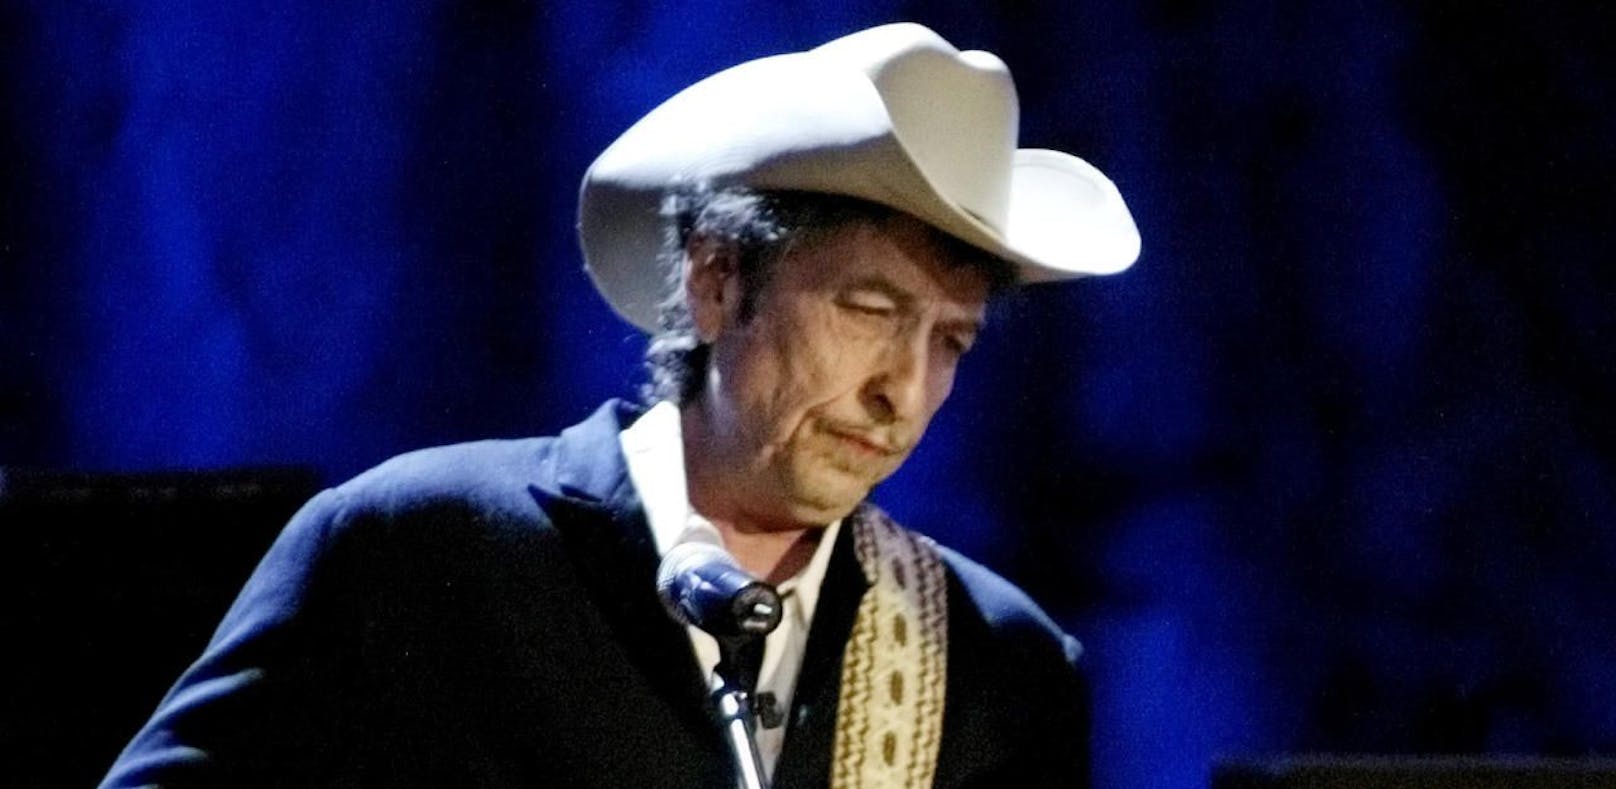 Bob Dylan beendet Musik-Pause nach 8 Jahren